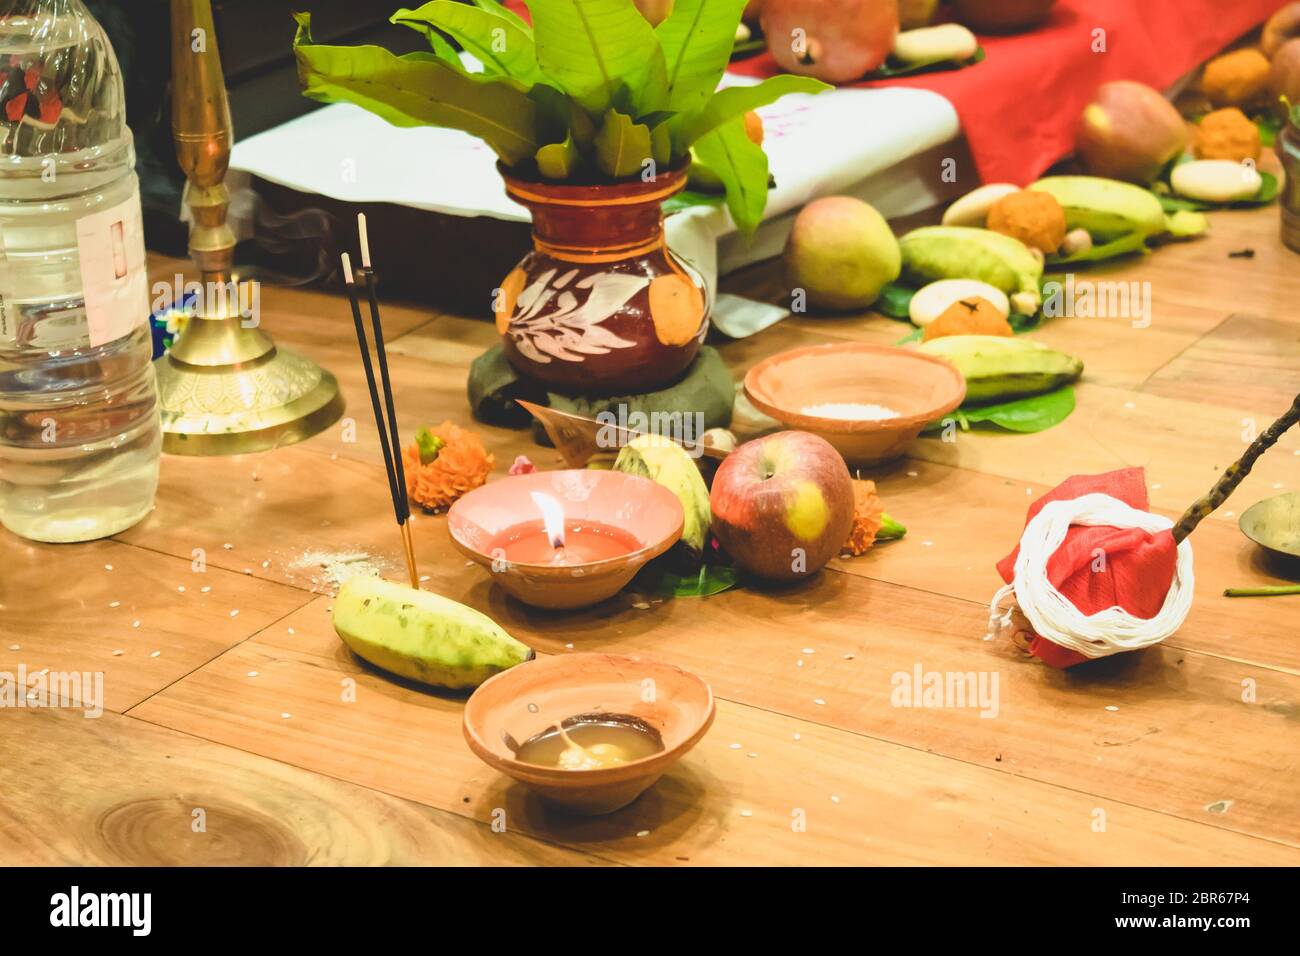 Selektive konzentrieren. Diwali Puja oder Laxmi puja Einrichten zu Hause. Öl lampe oder Diya mit Crackern, süsse, trockene Früchte, indische Währung, Blumen und die Statue von G Stockfoto